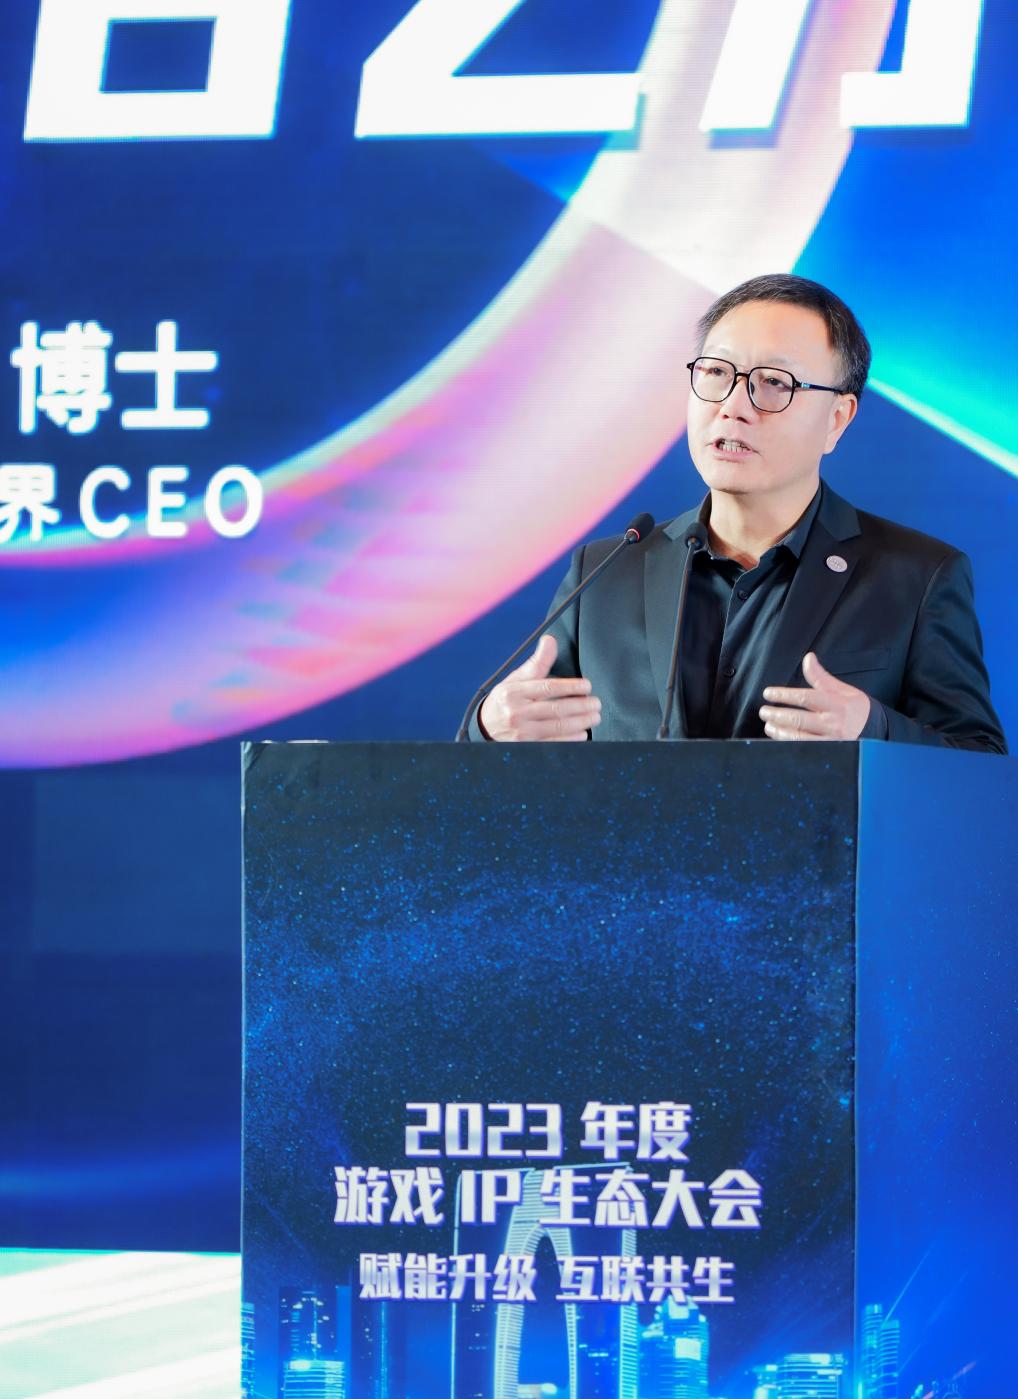 图为萧泓博士在2023年度游戏IP生态大会上发表主题演讲